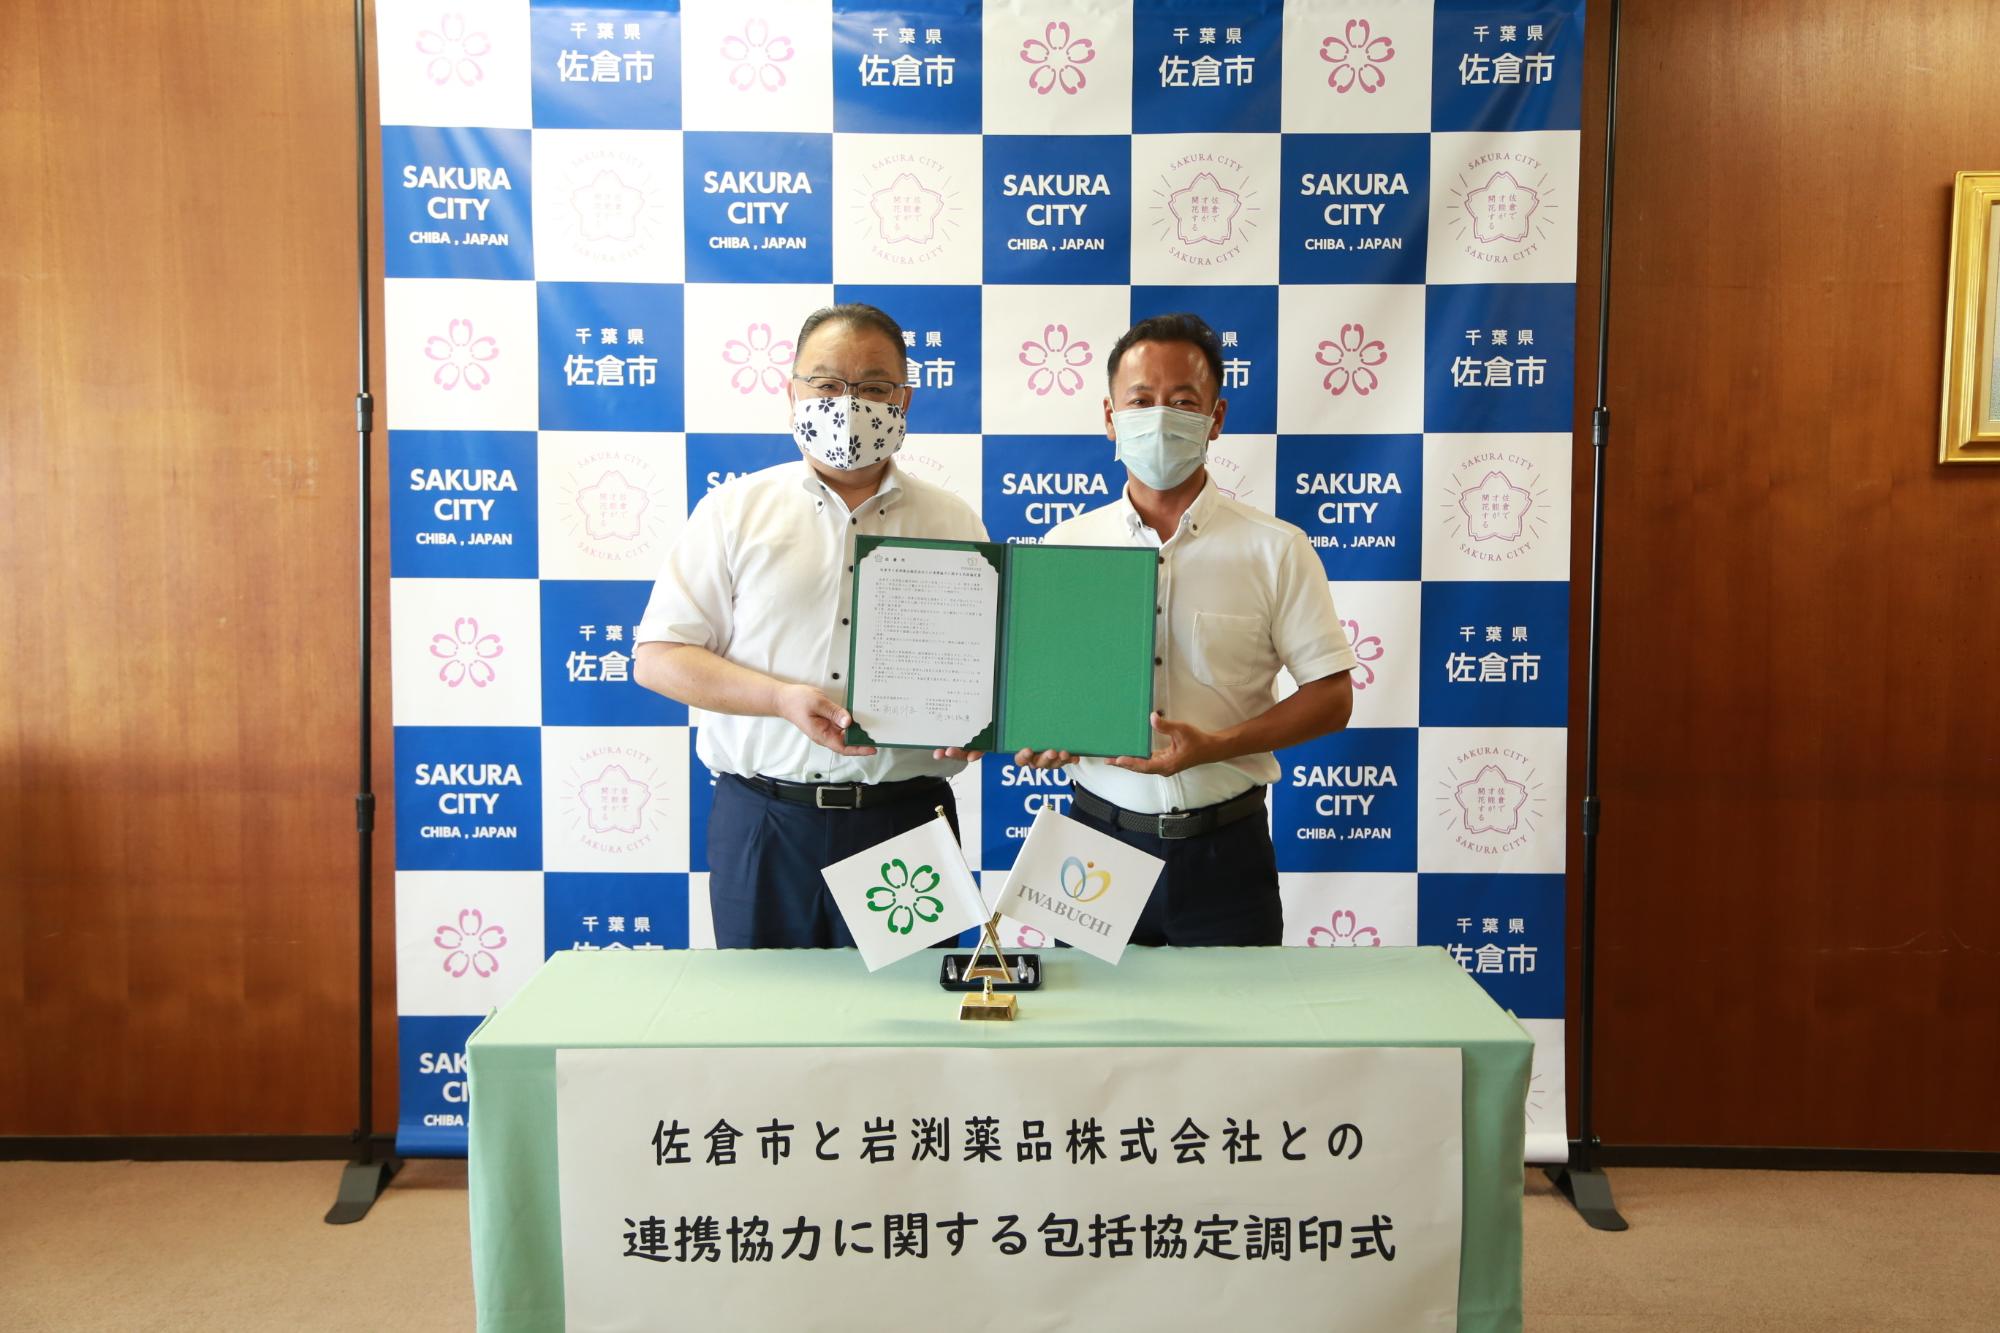 2人で協定書を持っている西田 三十五市長と 岩渕 琢磨様の写真